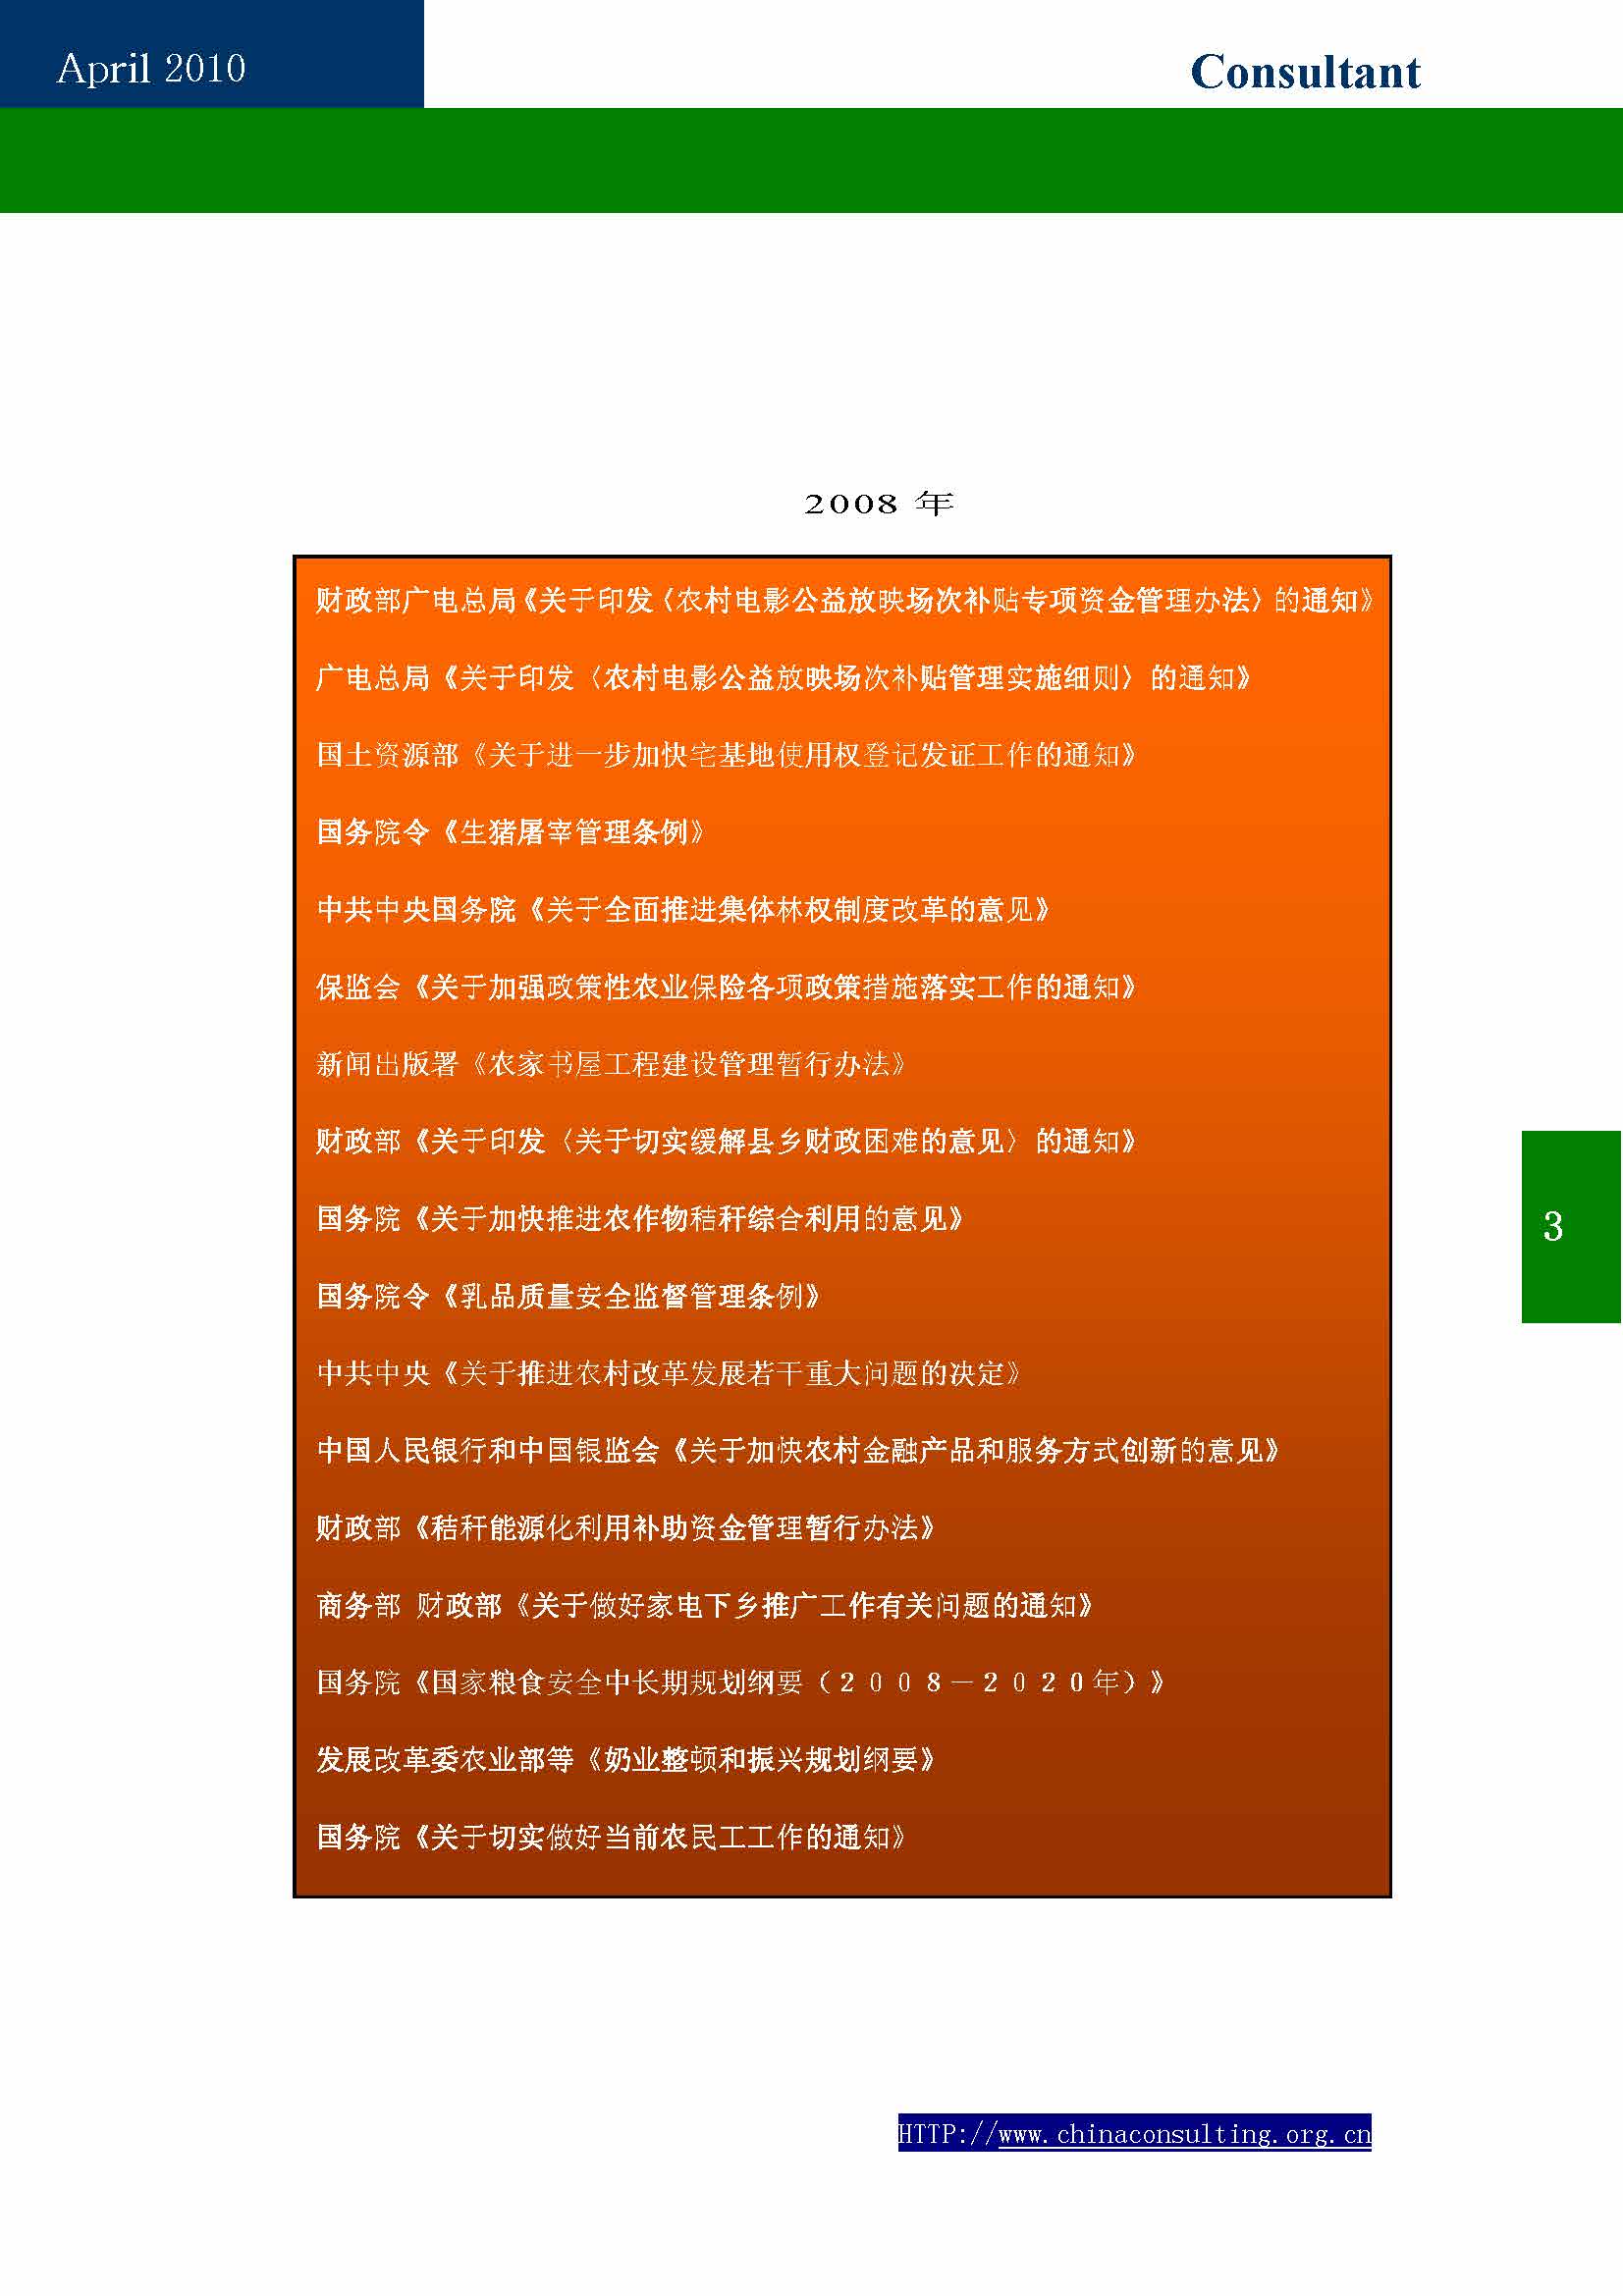 9中国科技咨询协会第九期会刊_页面_05.jpg